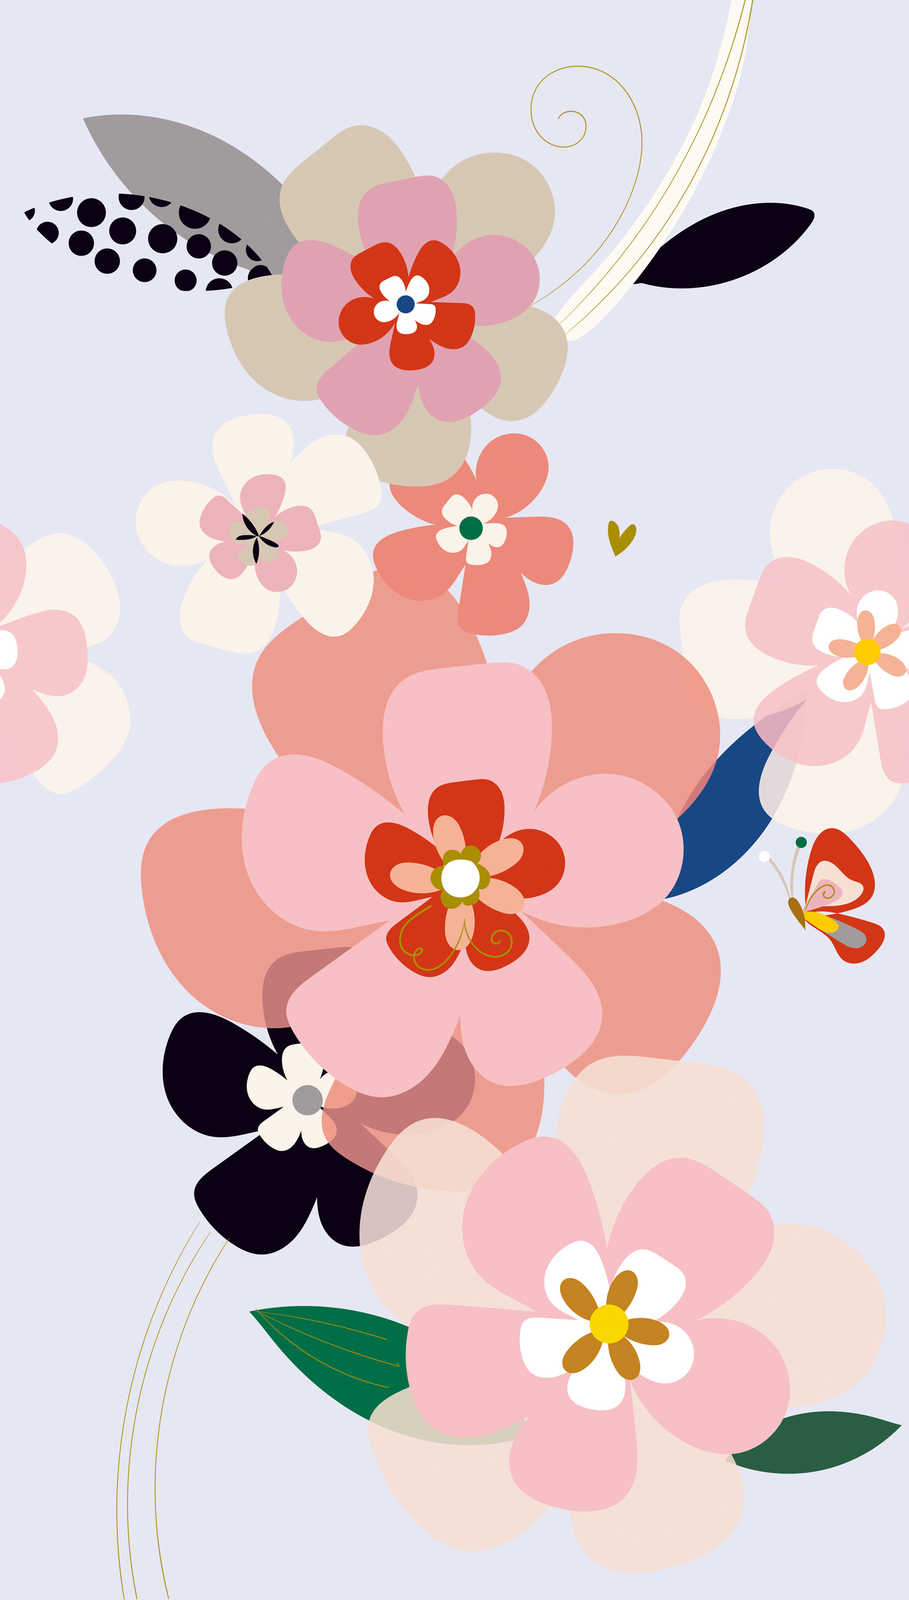             Papel pintado con motivos florales en estilo minimalista - multicolor, rosa, lila
        